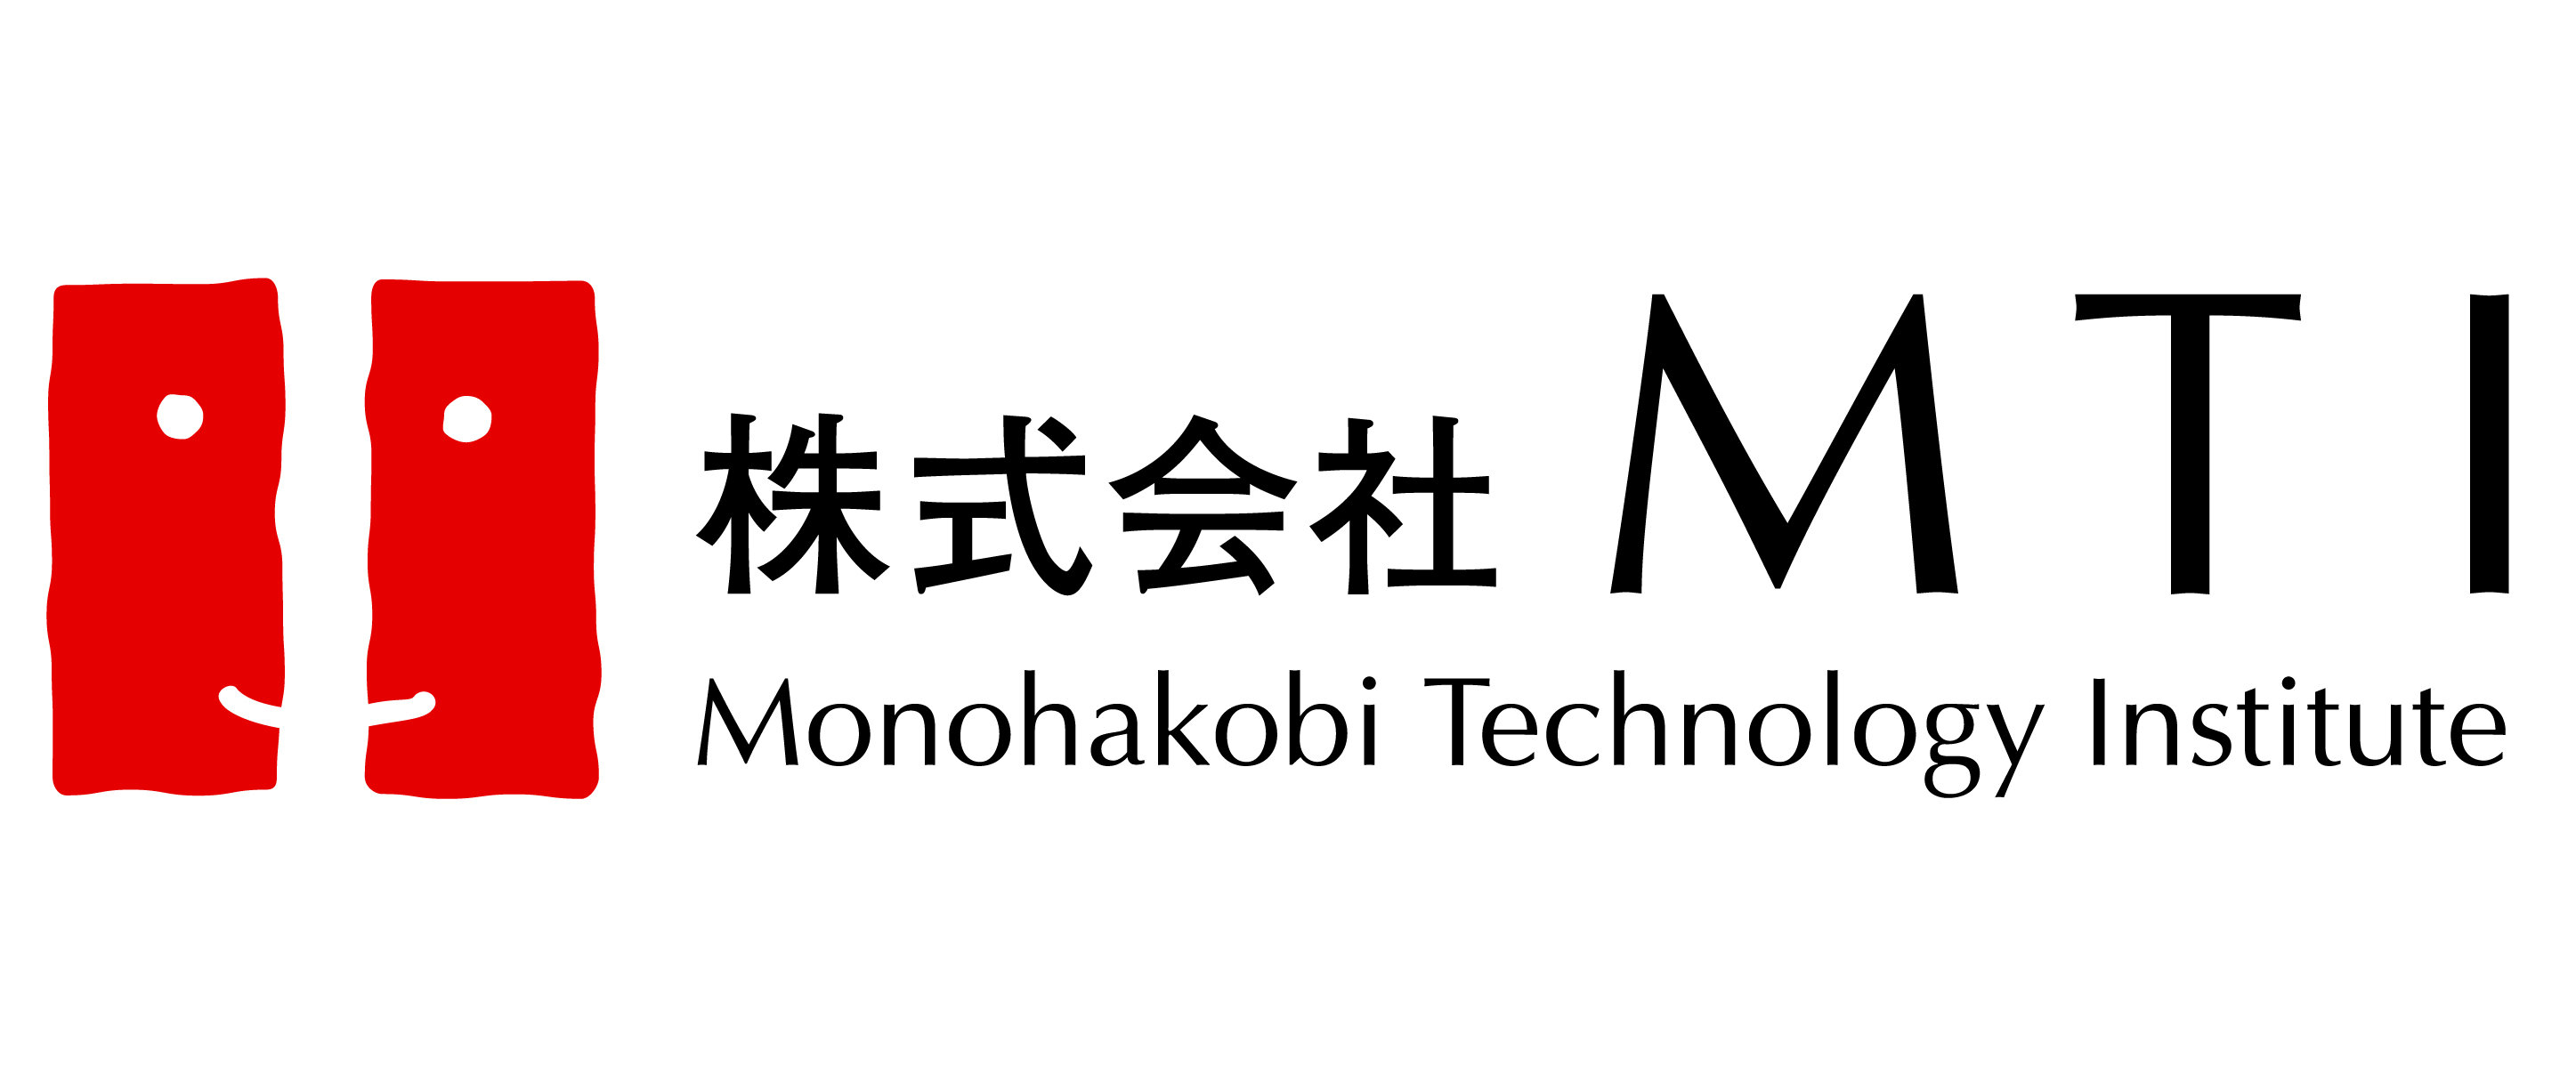 MTI_logo03_大容量.jpg